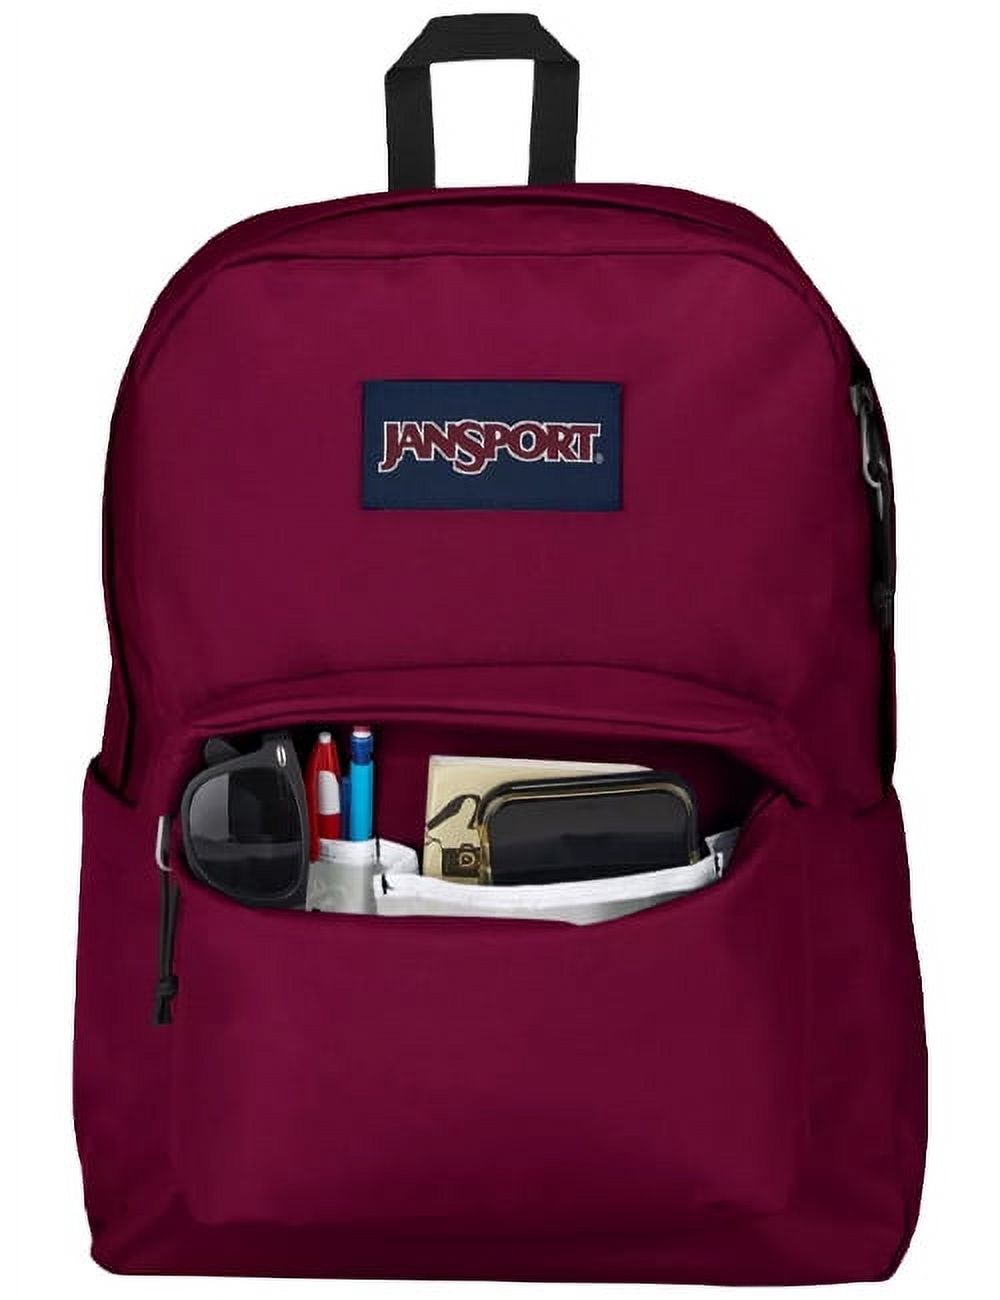 JanSport Unisex SuperBreak Backpack School Bag Russet Red - image 3 of 3